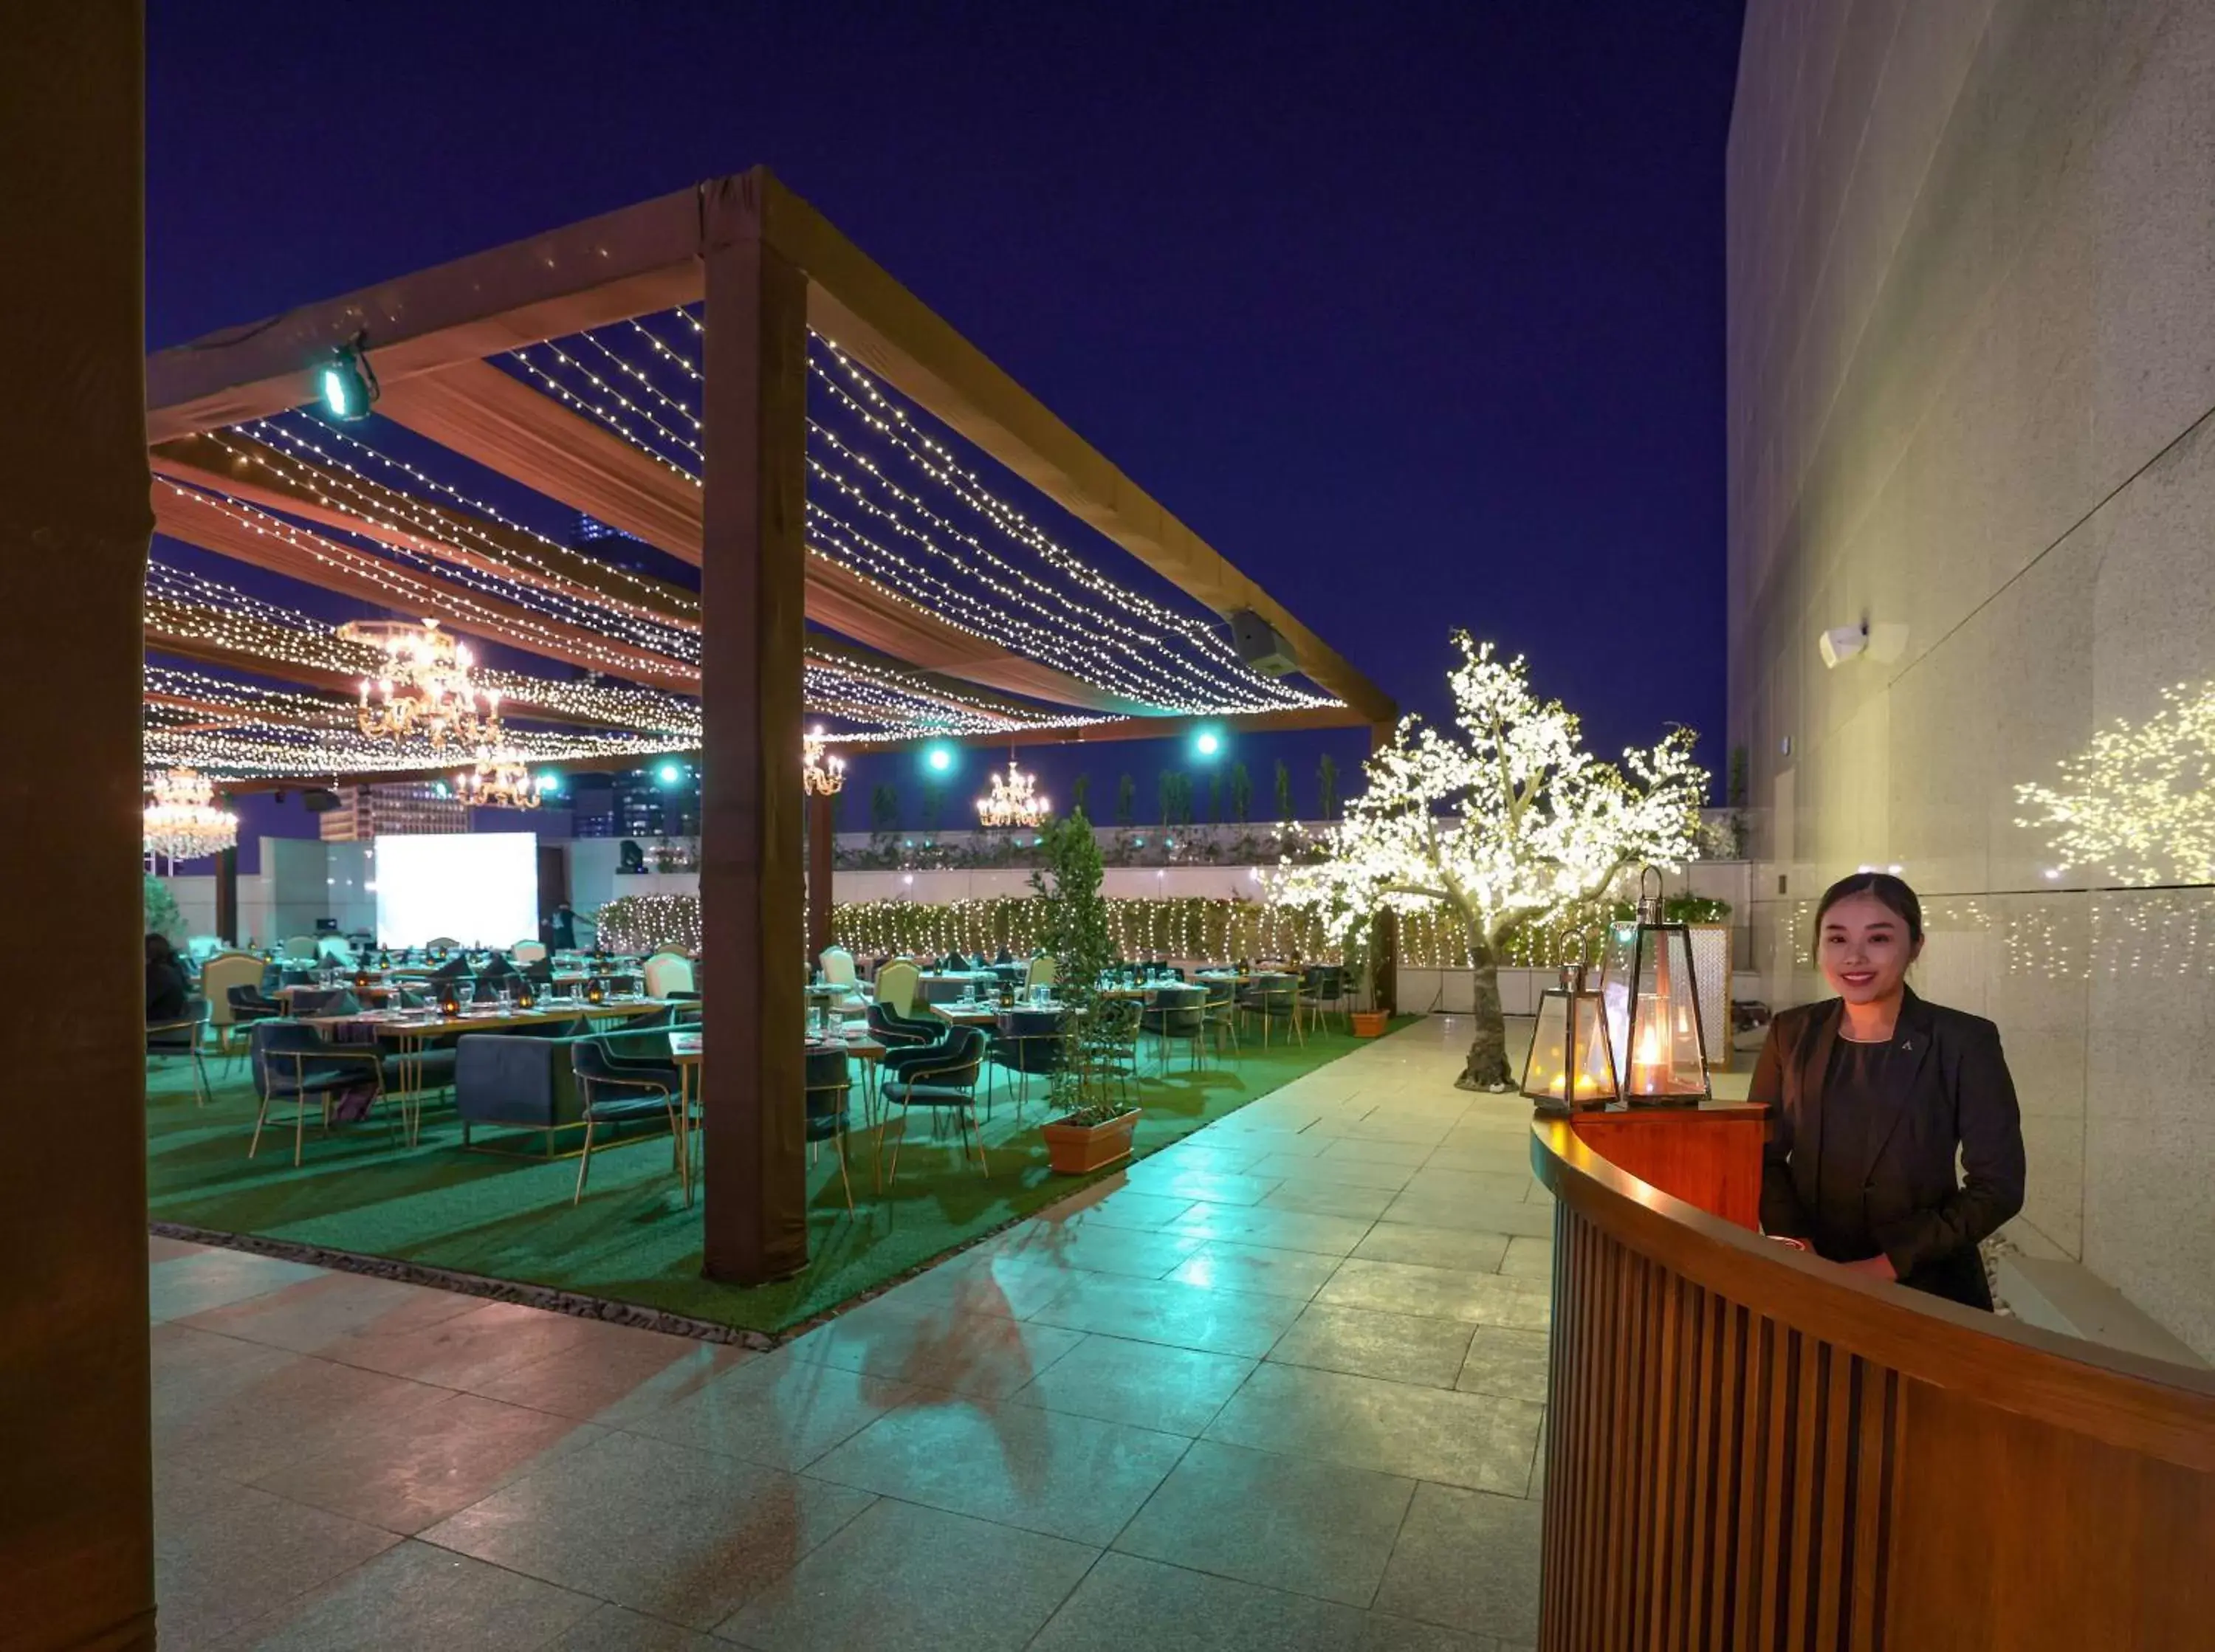 Restaurant/places to eat in Conrad Dubai